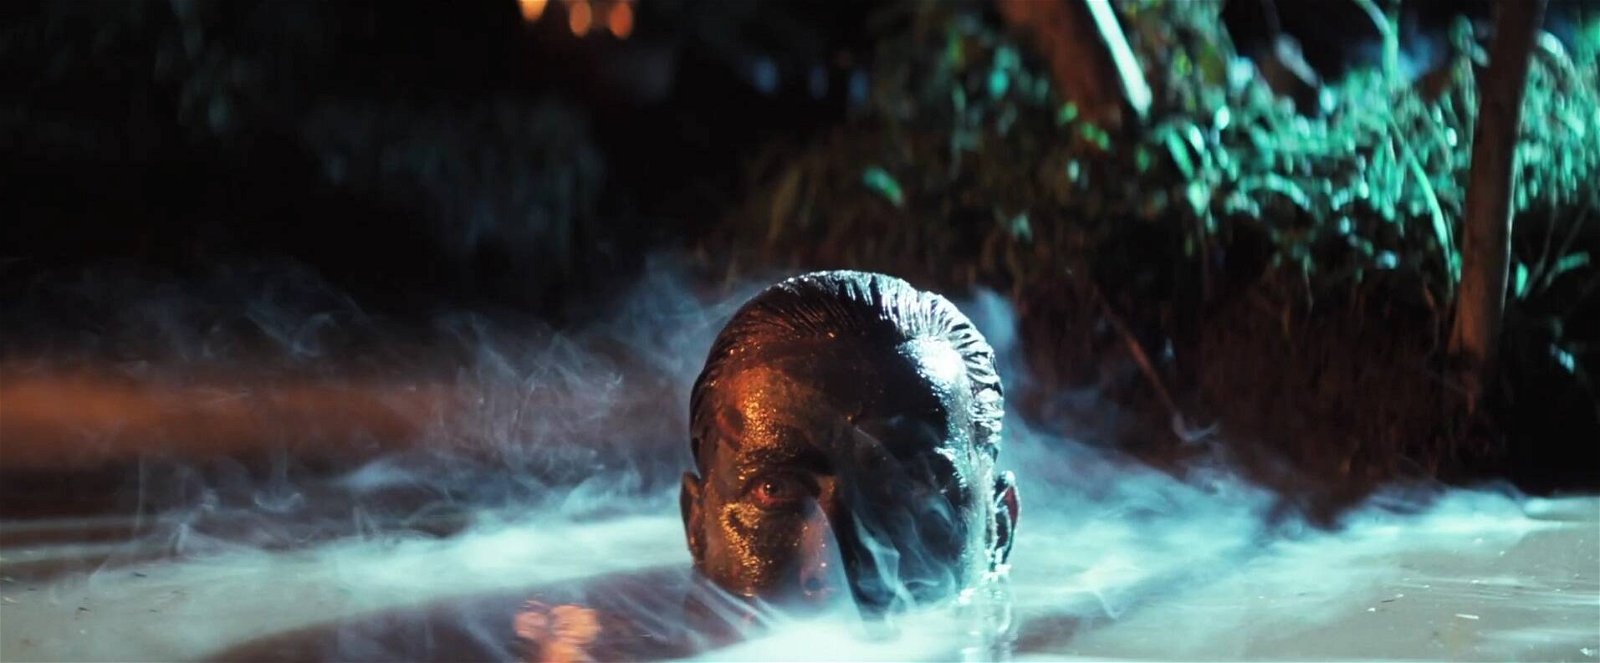 Immagine di Apocalypse Now: l'orrore della guerra secondo Coppola